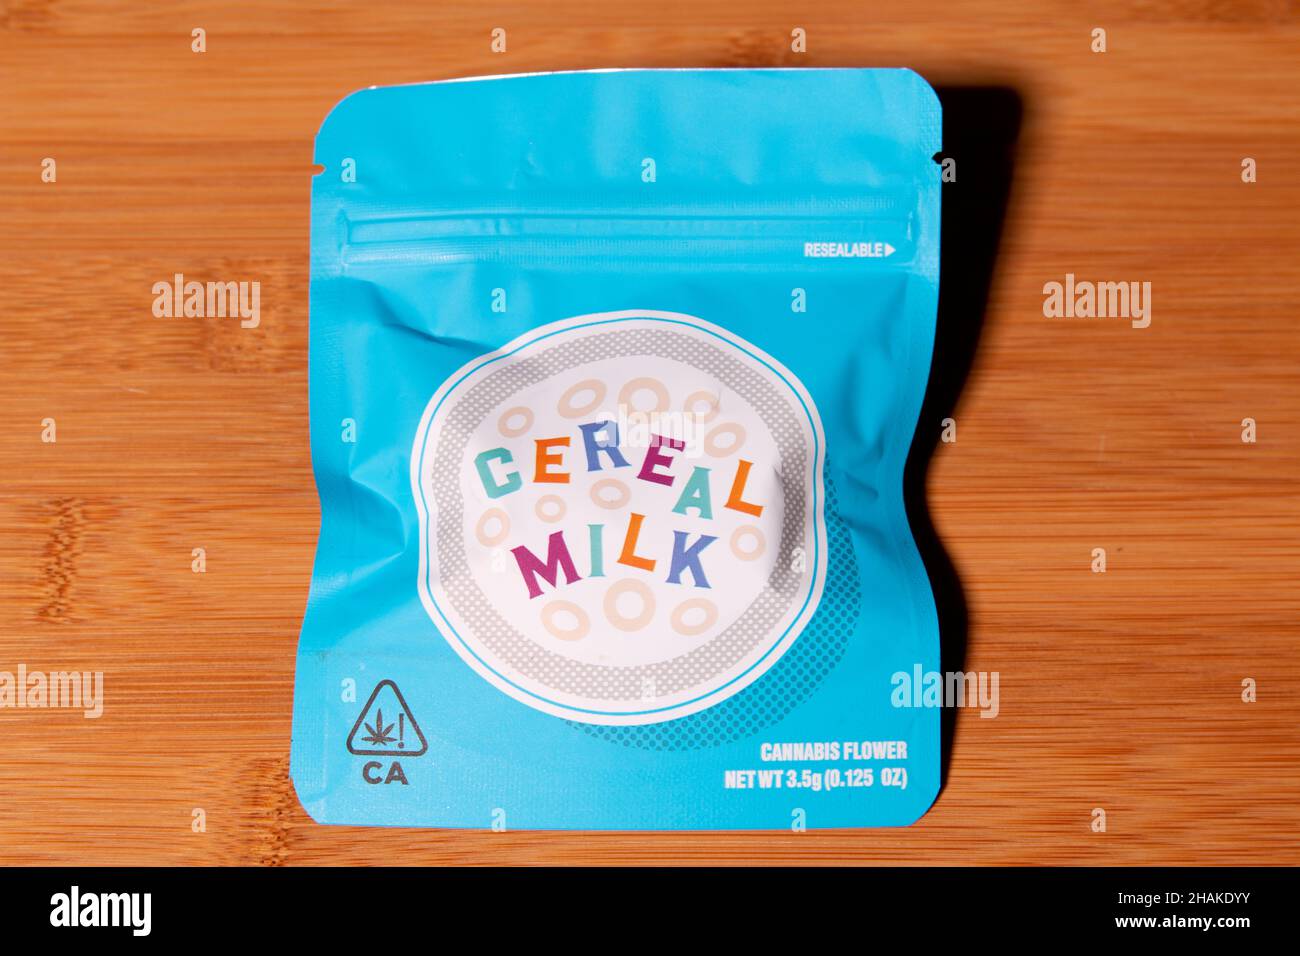 Pacchetto di latte di cereali da Cookies legale cannabis dalla California Foto Stock